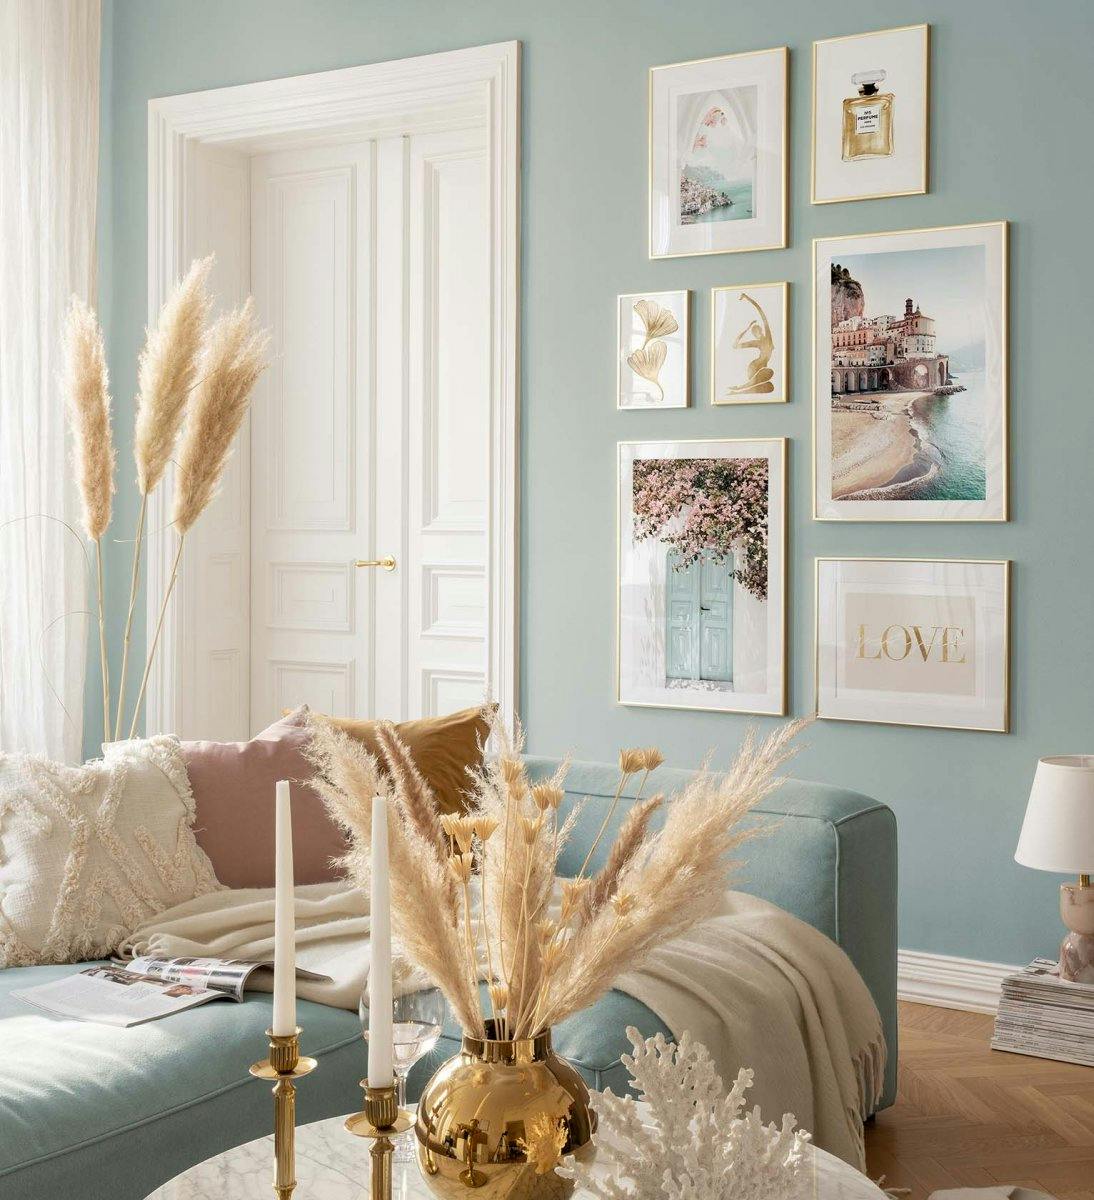 Pared de galería tropical en azul y beige con marcos dorados para sala de estar